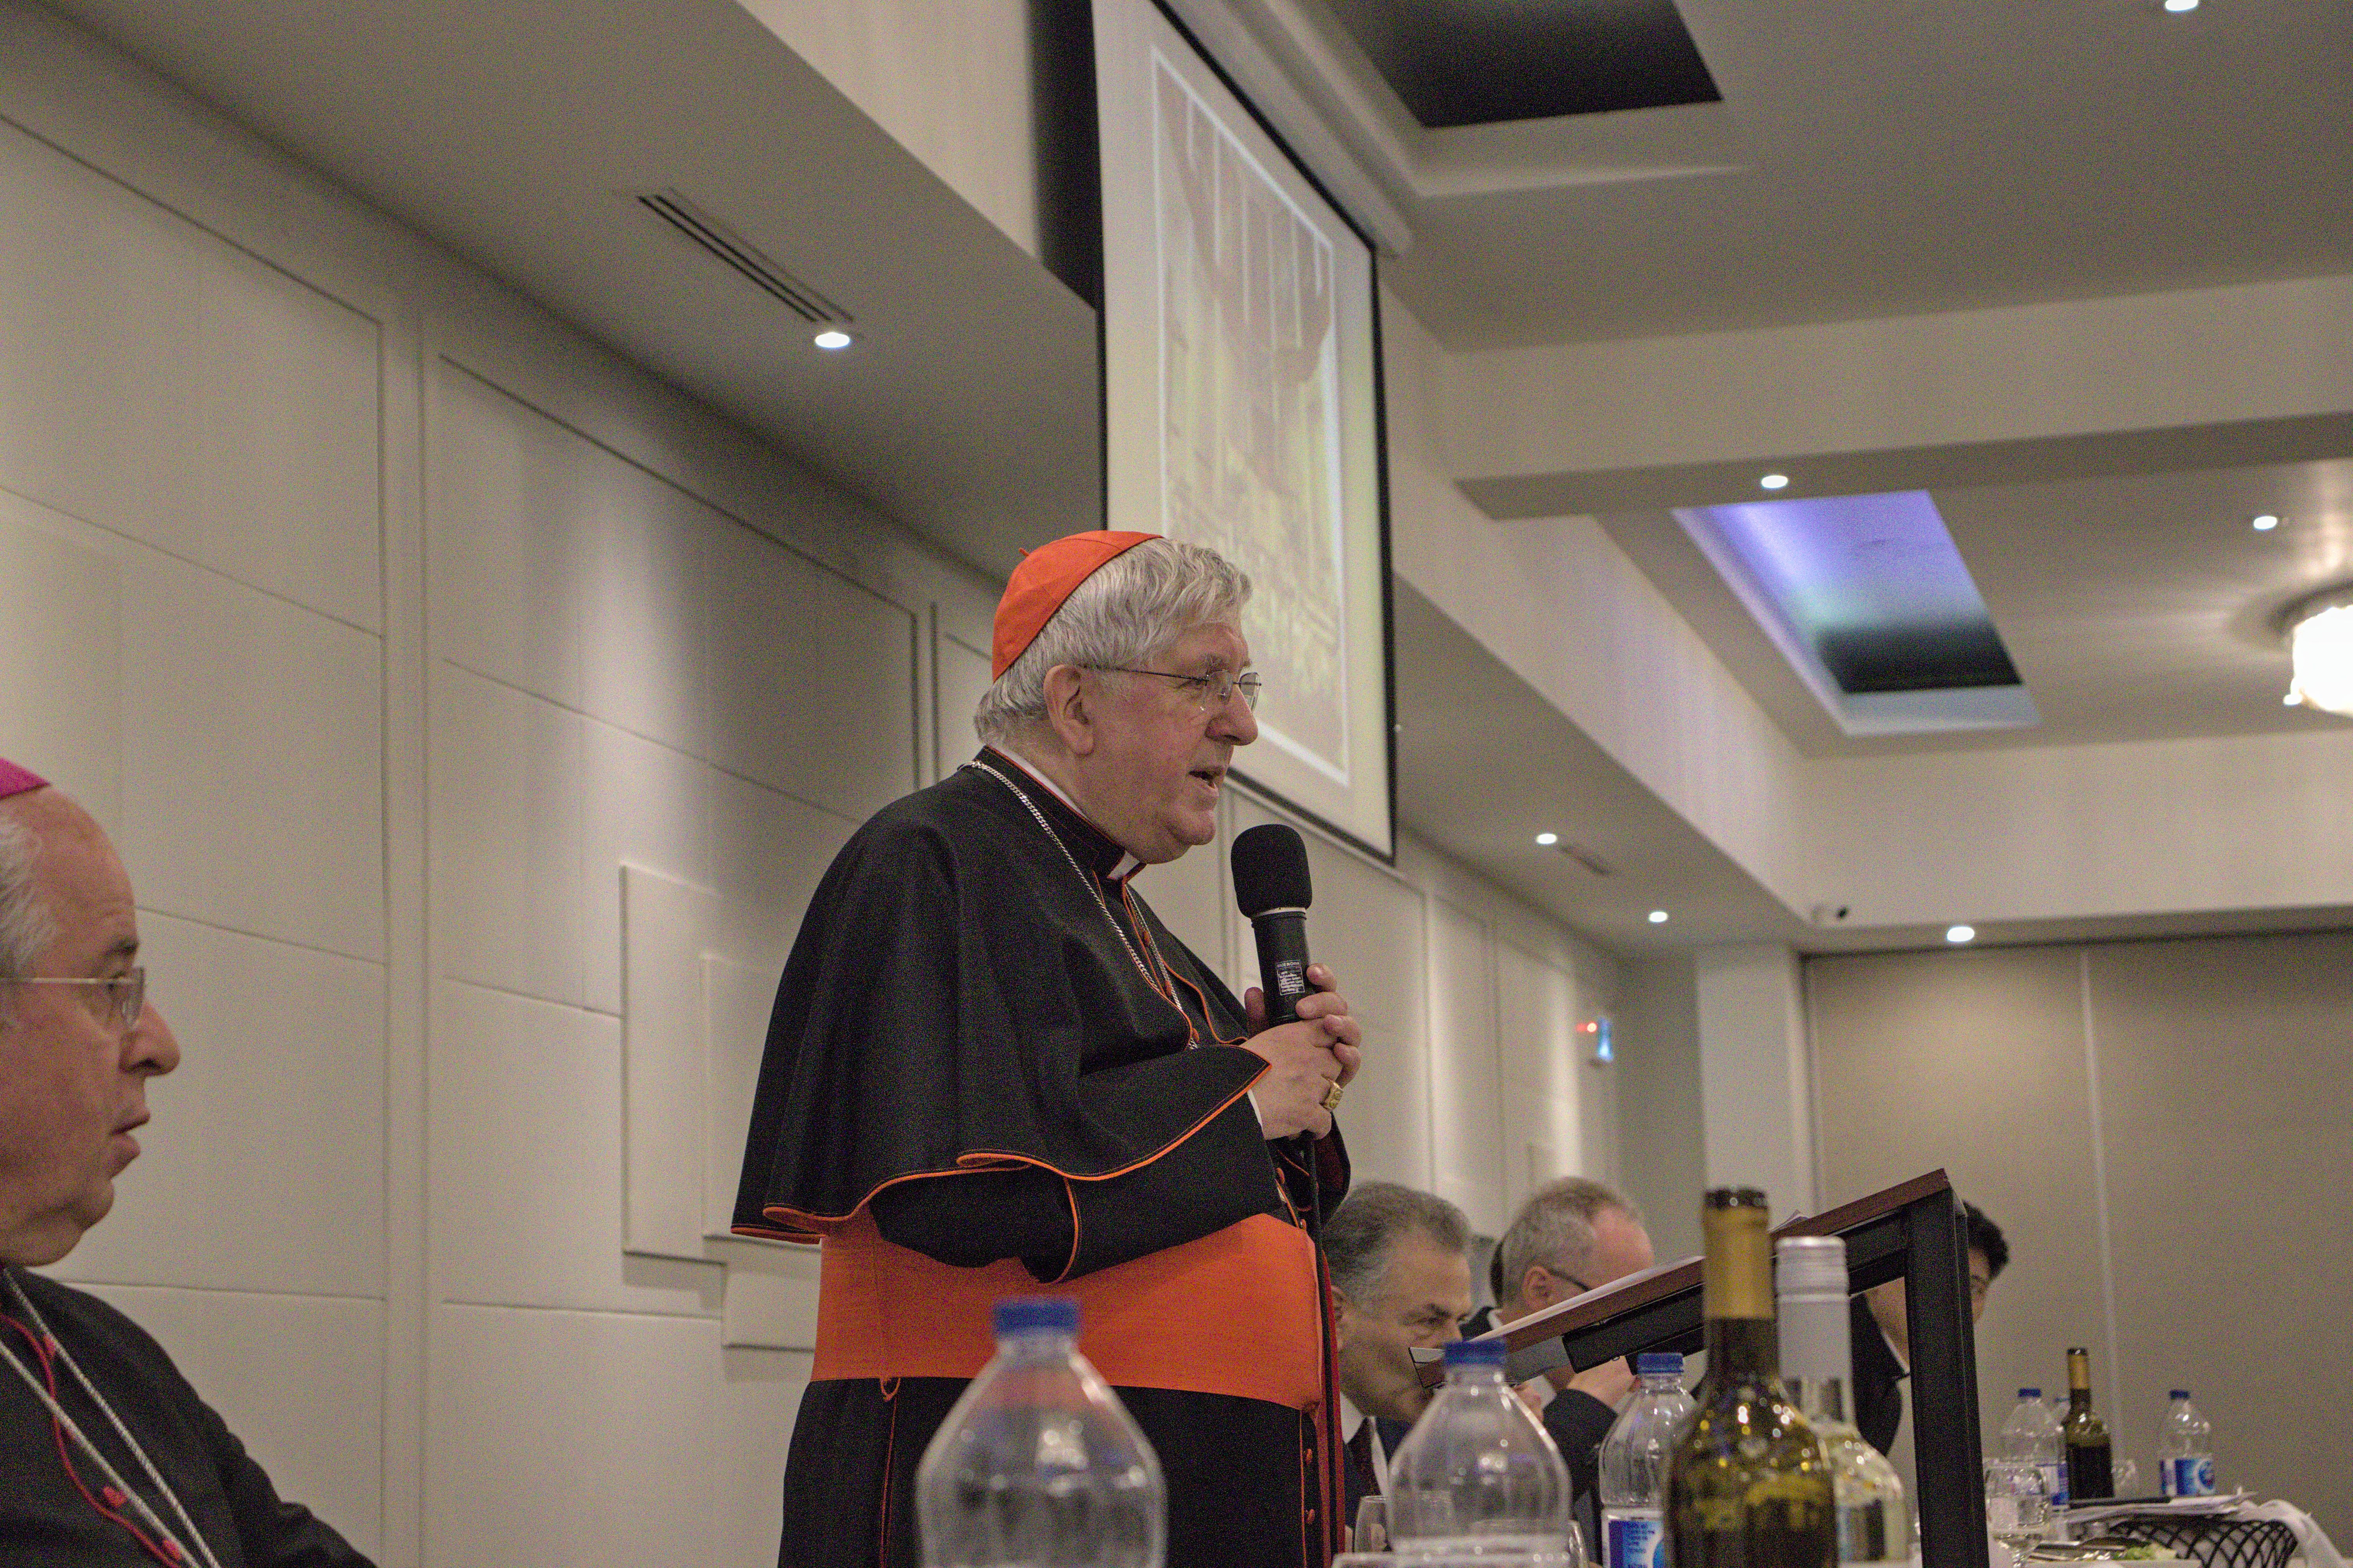 Cardinal Collins giving a speech